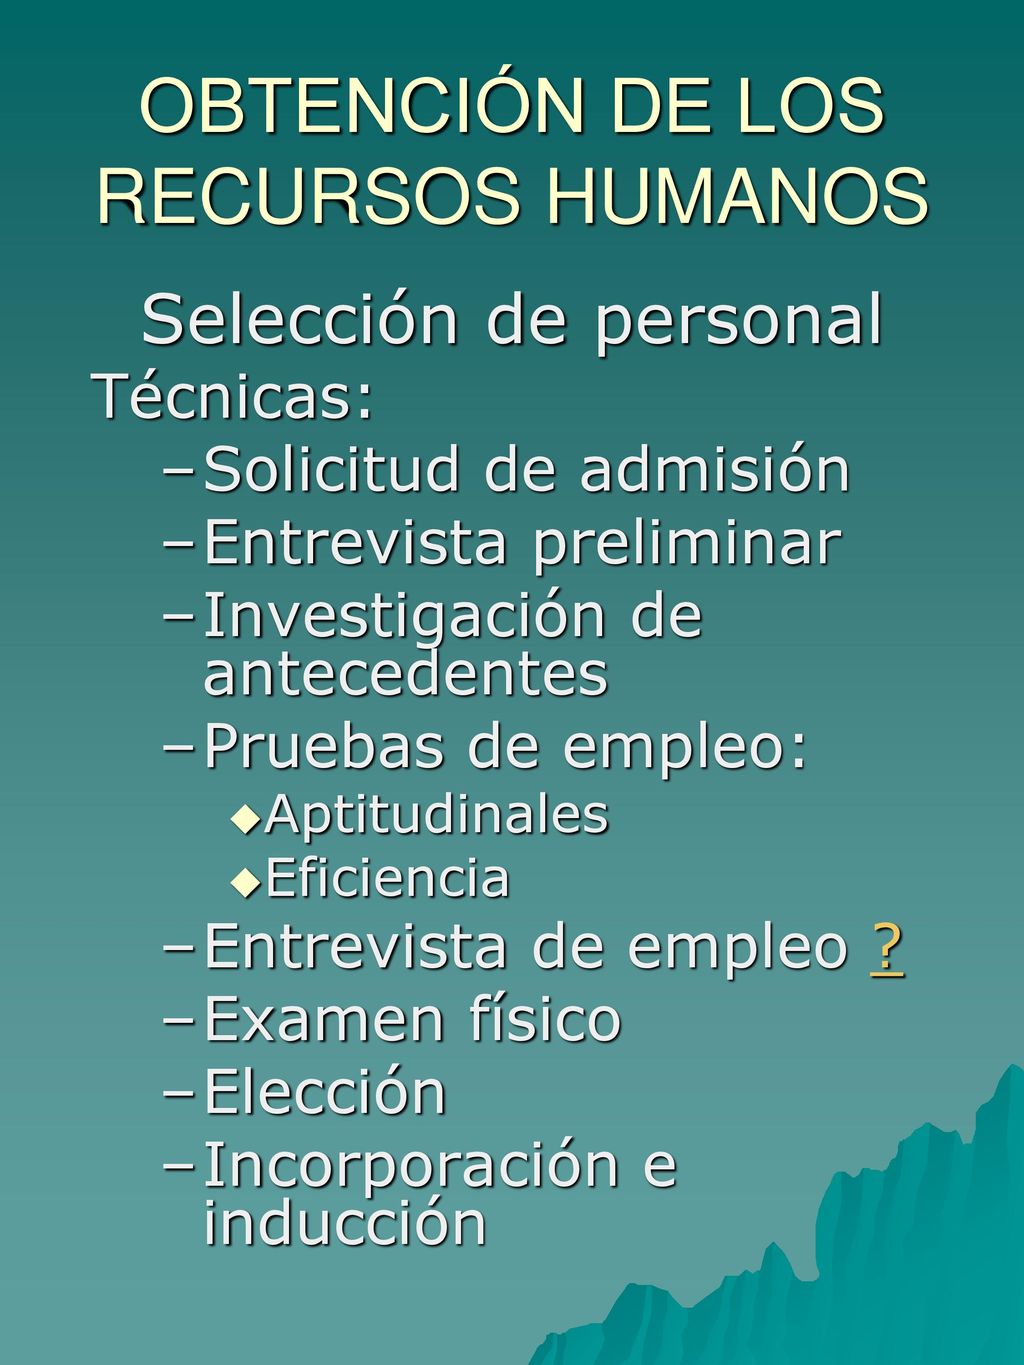 OBTENCIÓN DE LOS RECURSOS HUMANOS